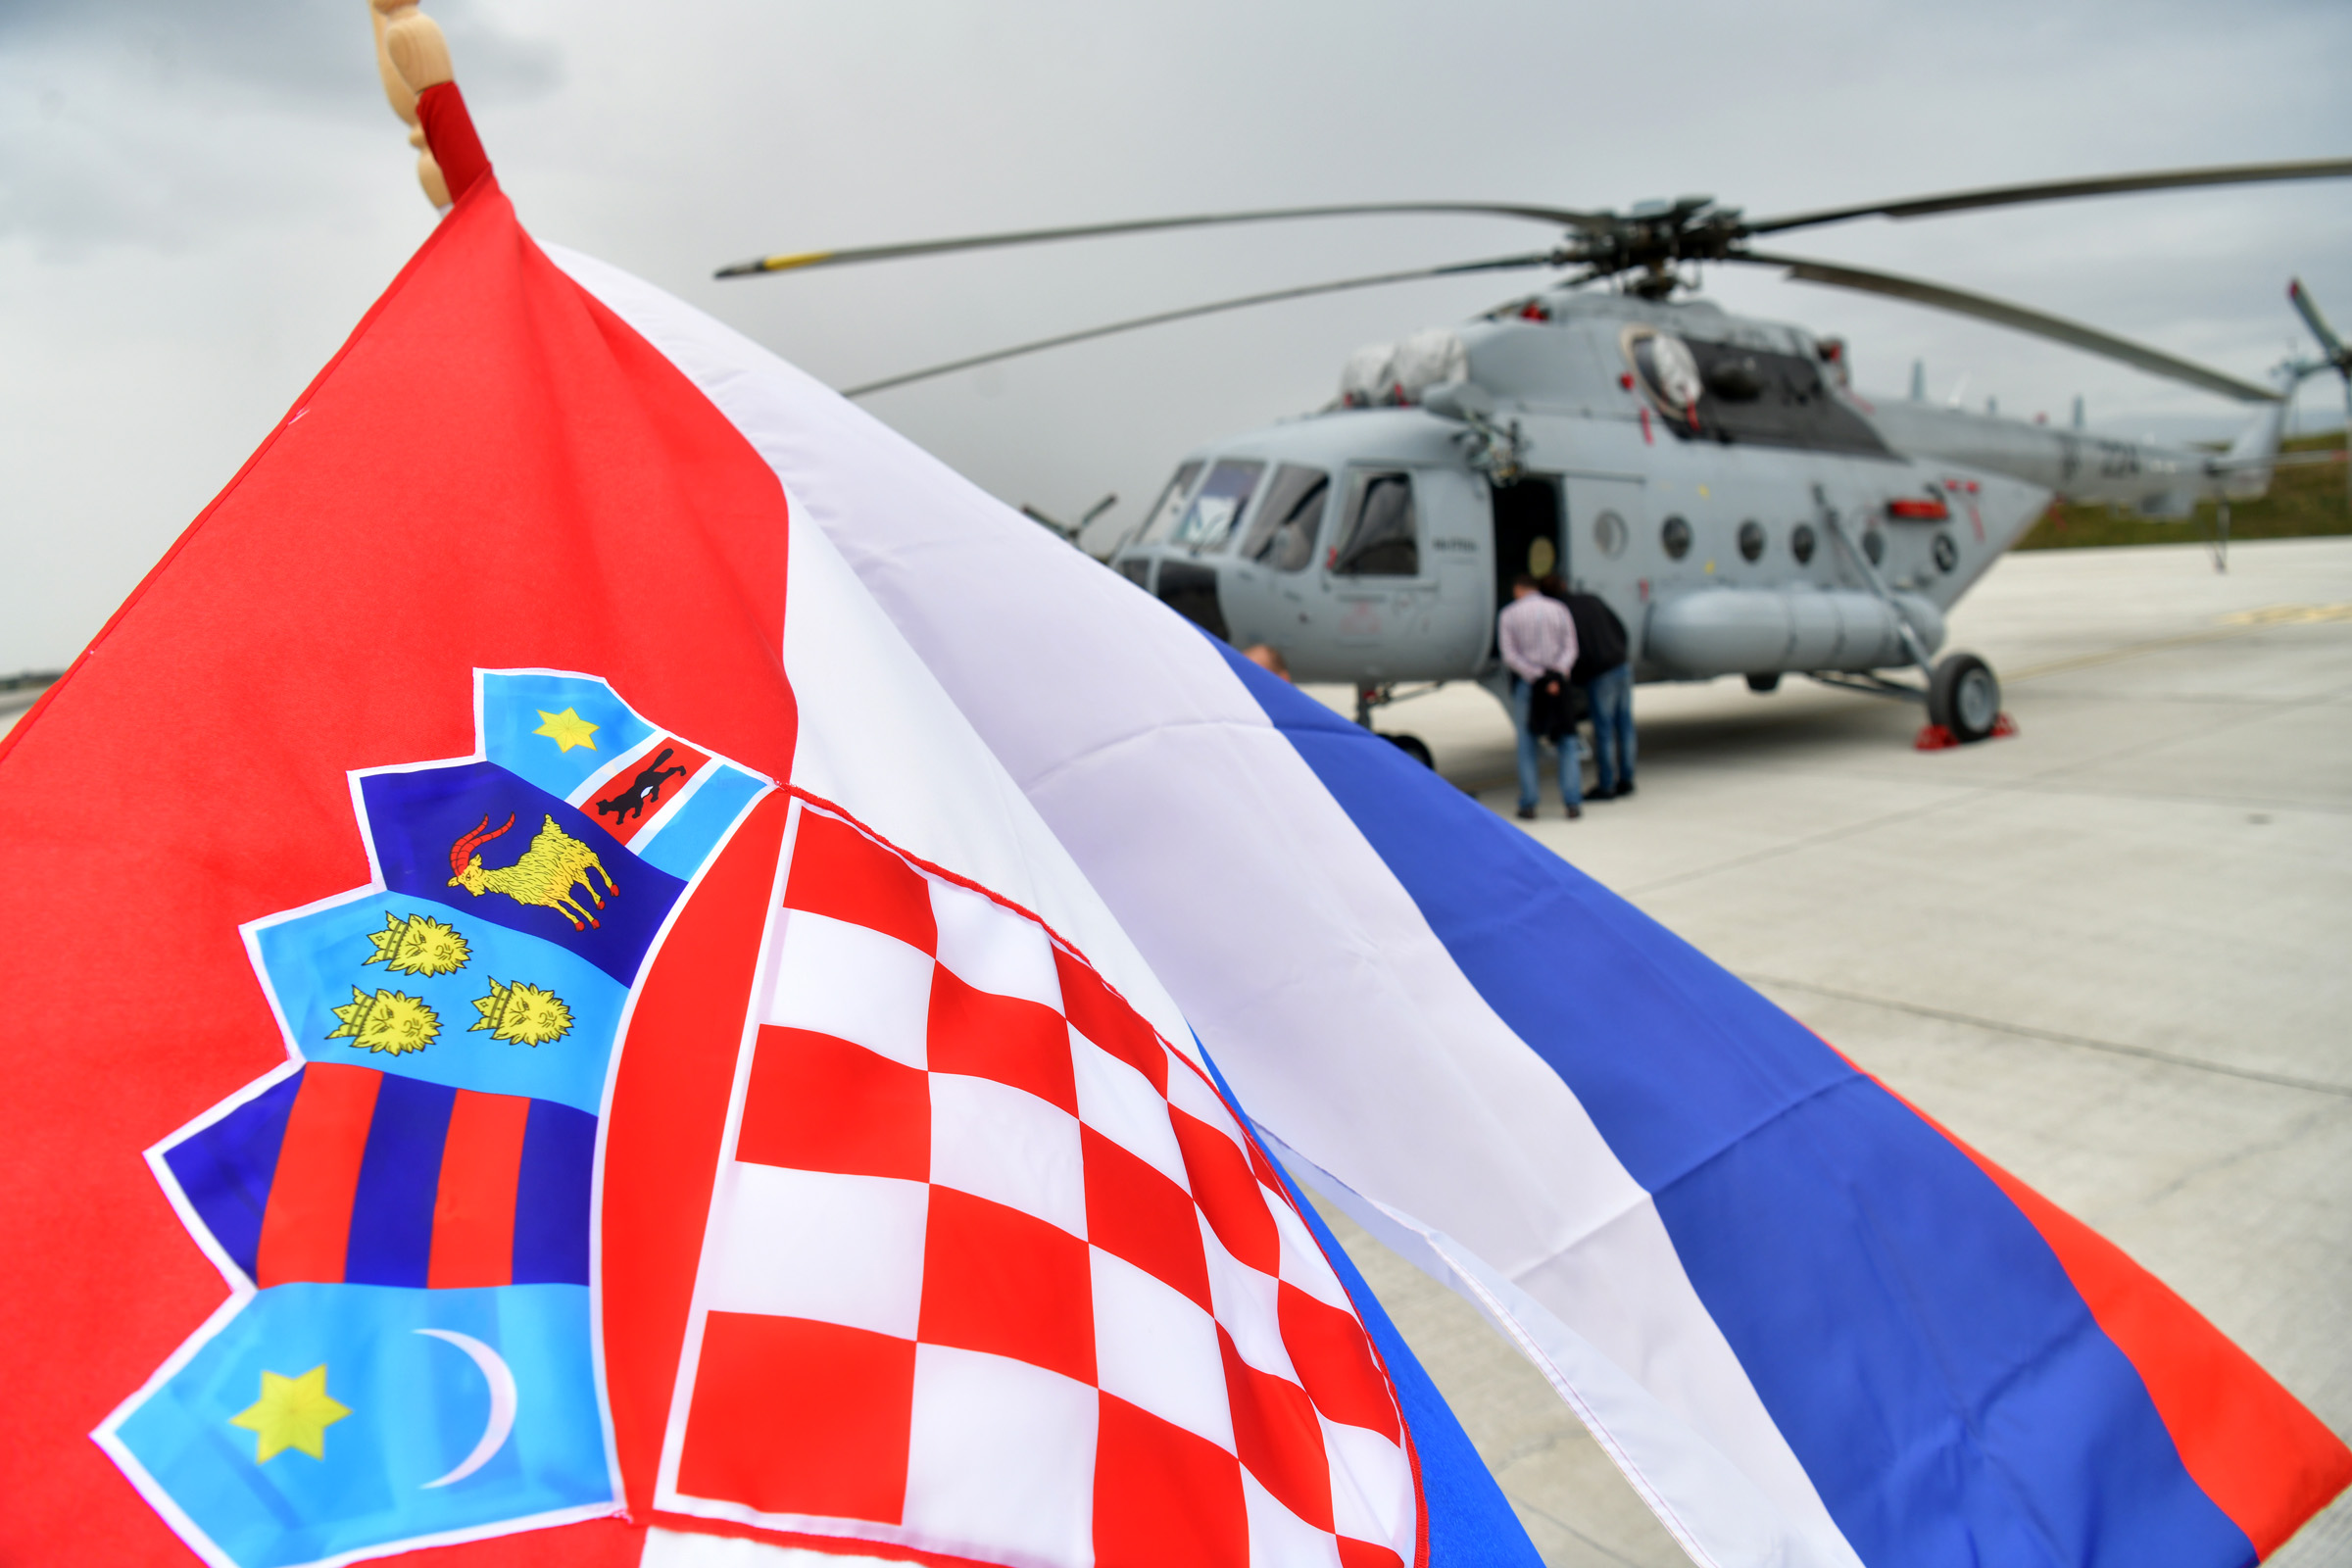 Održana prezentacija remontiranih helikoptera Mi-171Sh na Plesu